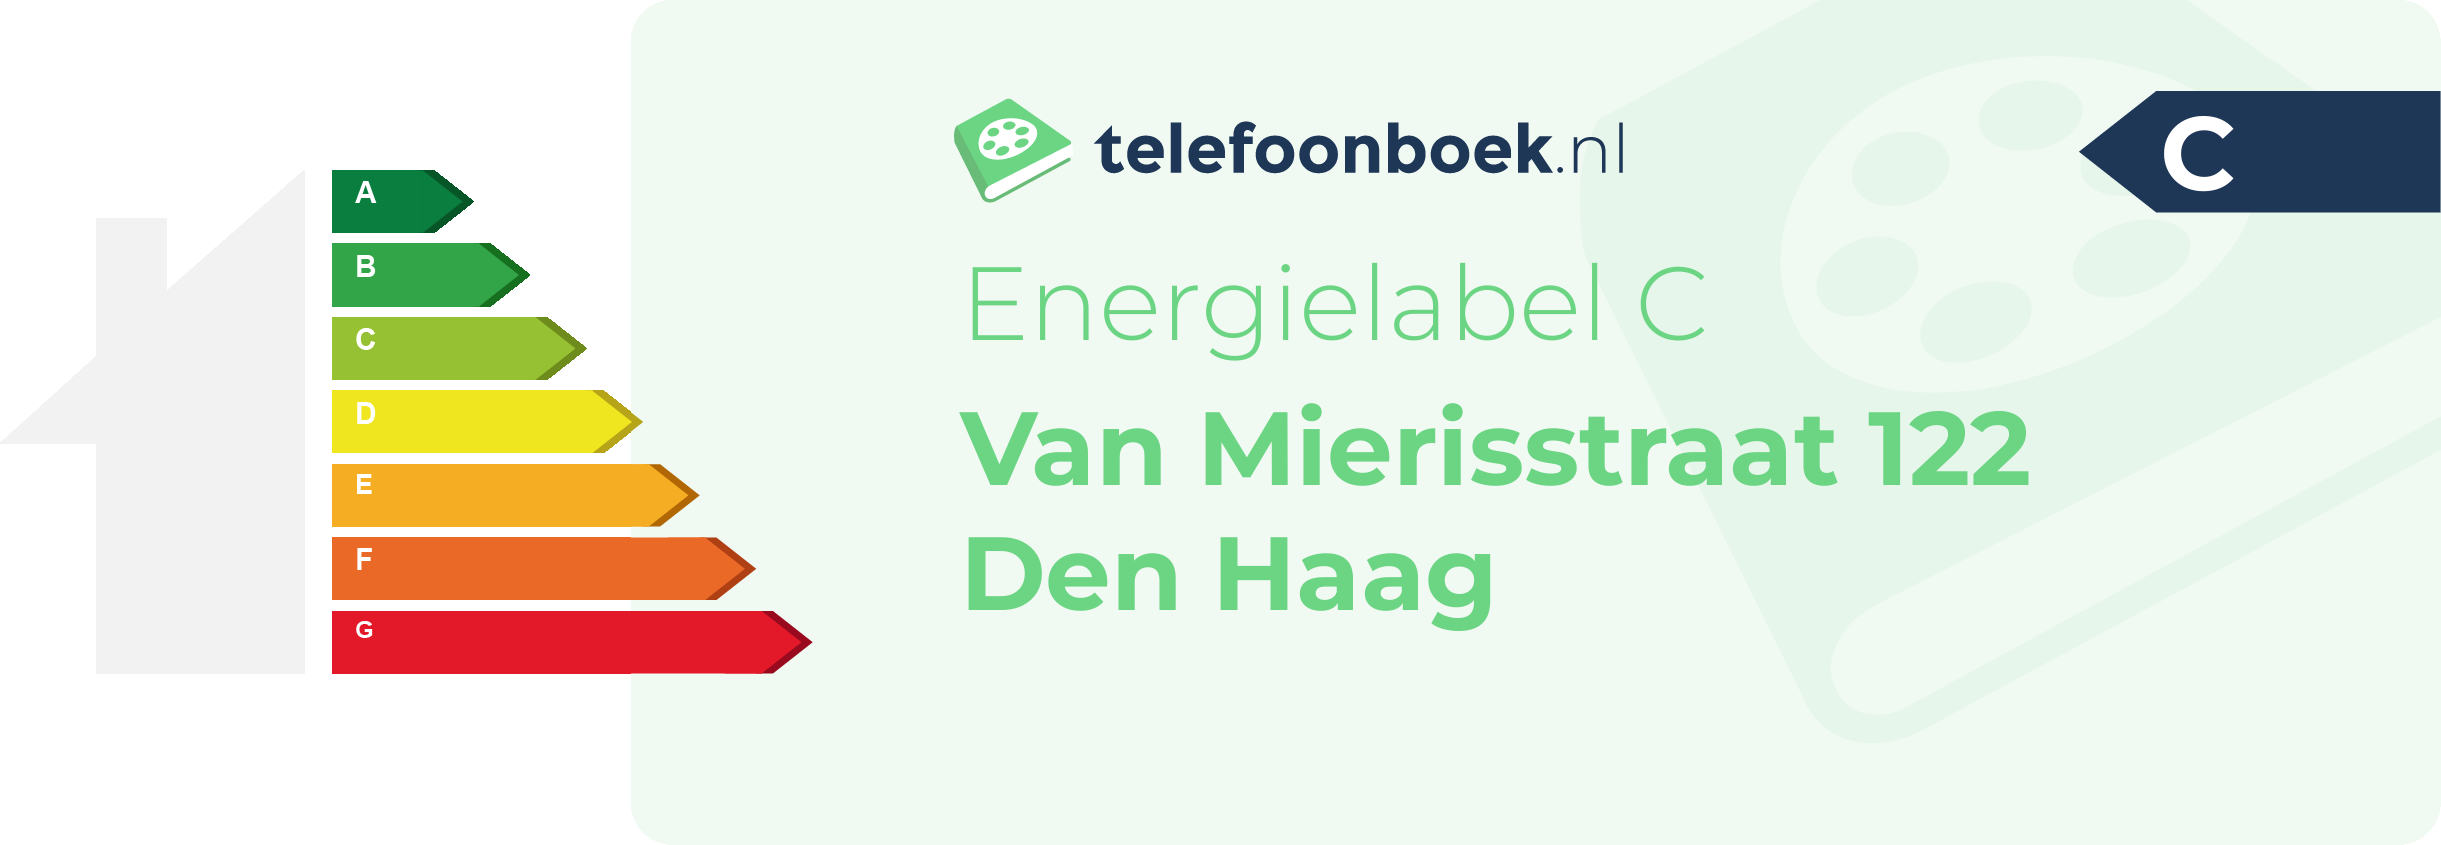 Energielabel Van Mierisstraat 122 Den Haag